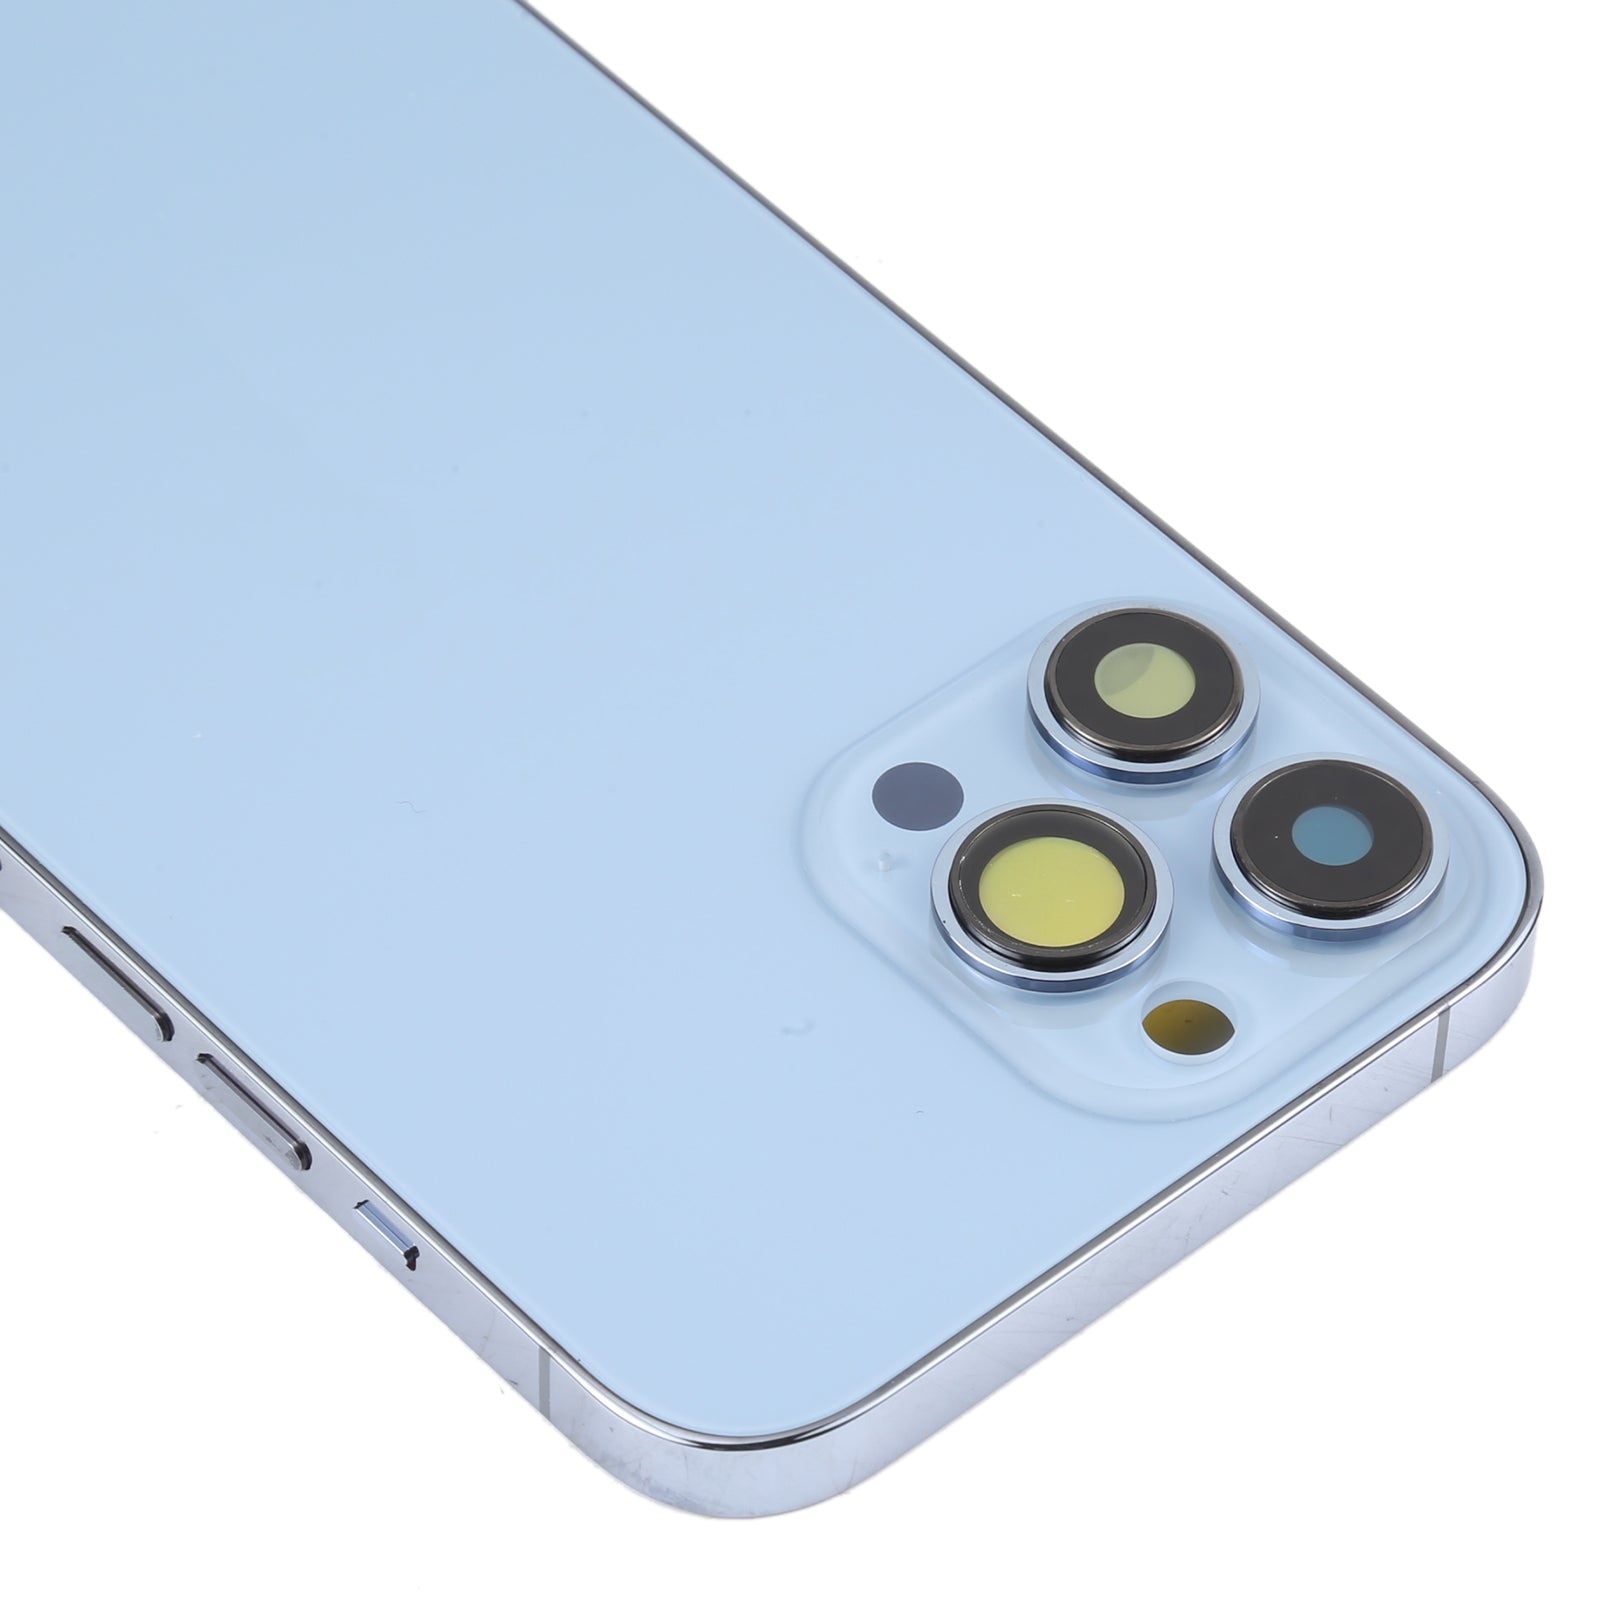 Carcasa Chasis Tapa Bateria Apple iPhone 13 Pro Max Azul